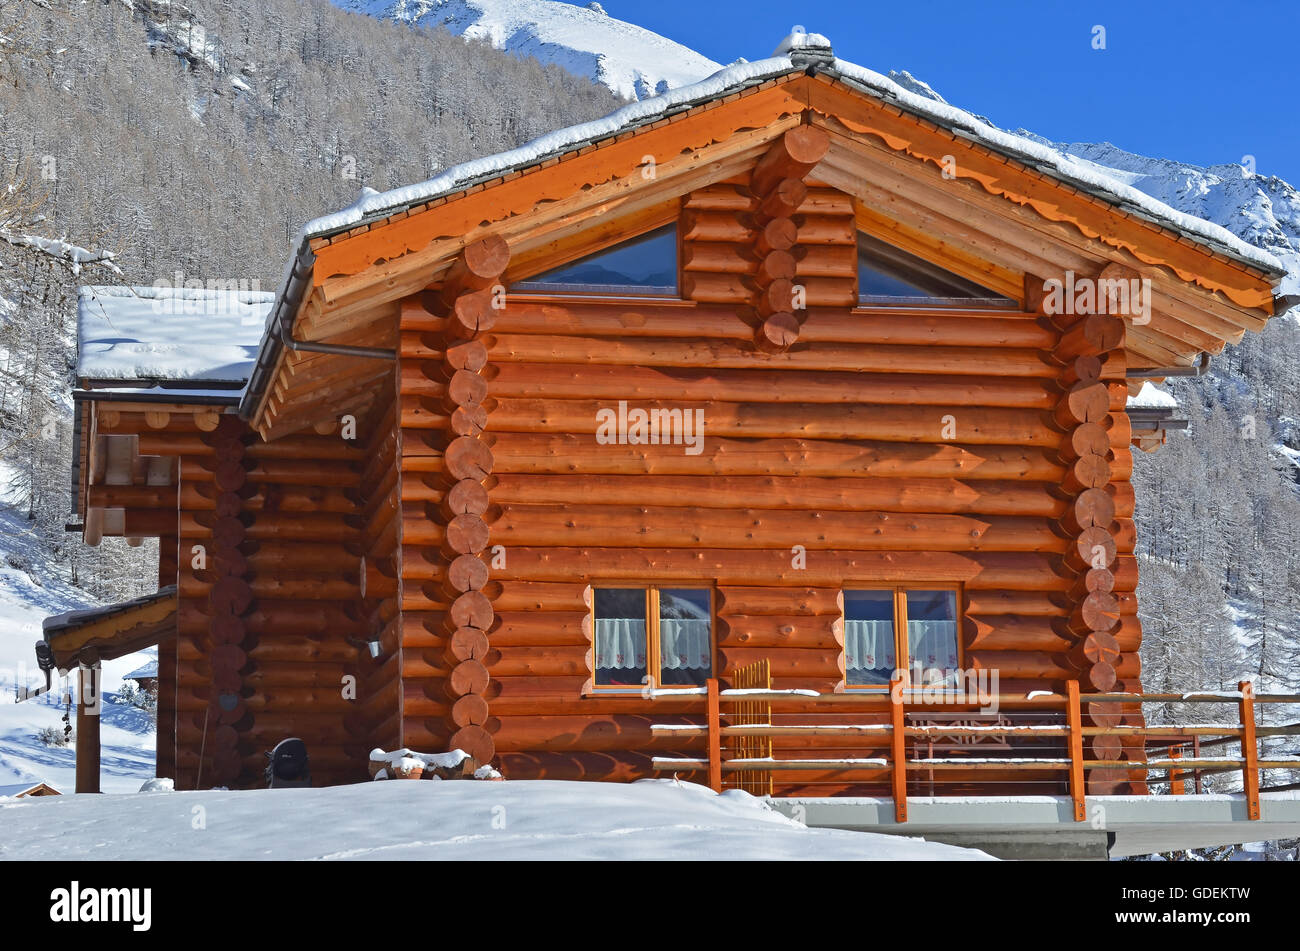 Eine alpine Blockhütte mit Schnee bedeckt, Berge und Wälder im Hintergrund Stockfoto